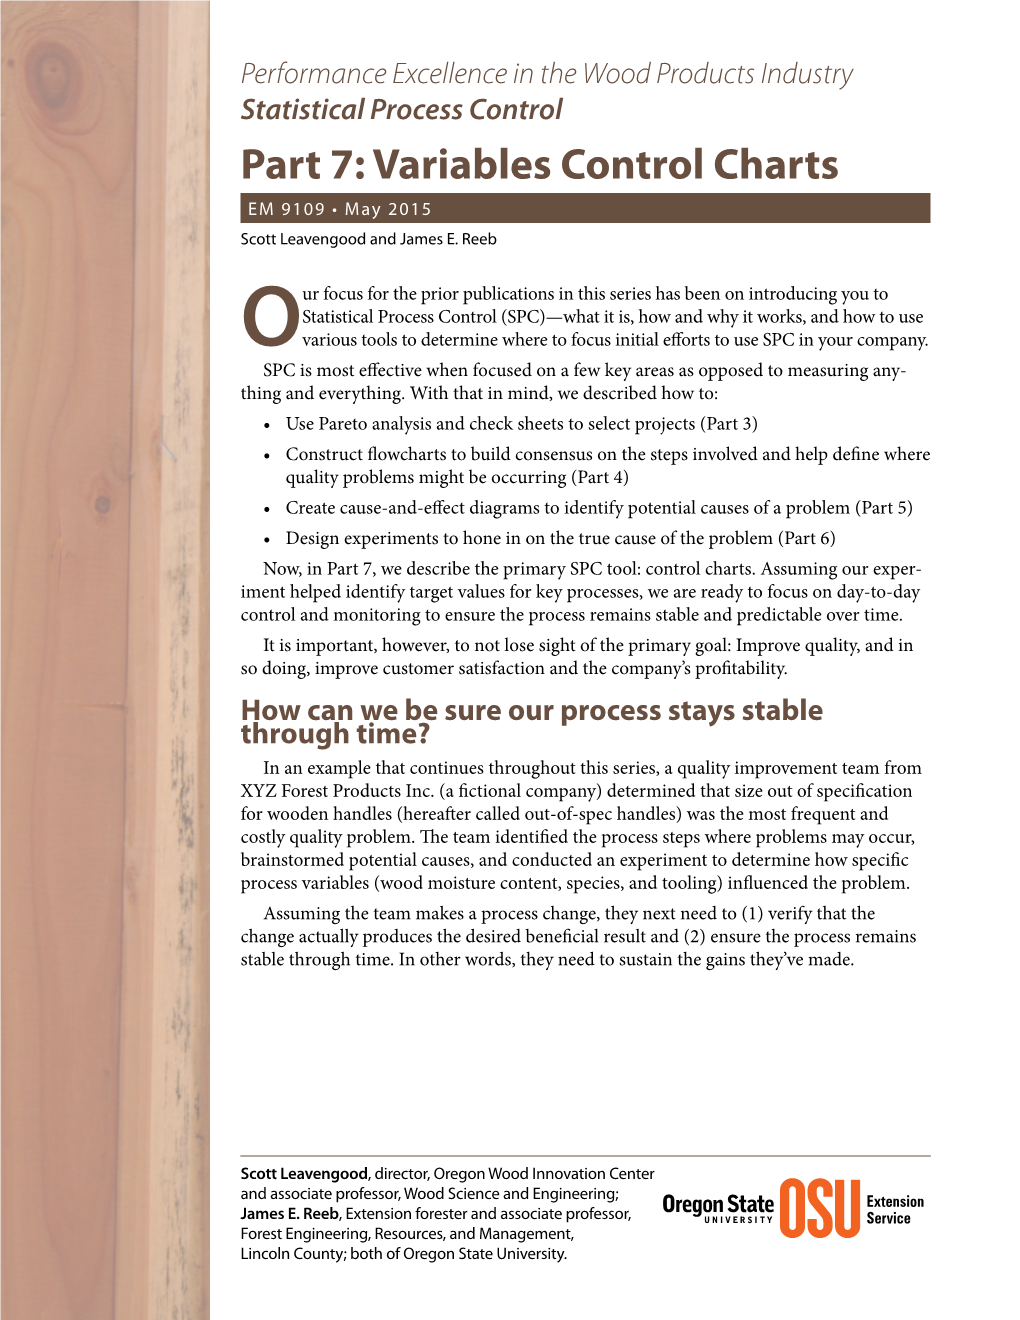 Statistical Process Control, Part 7: Variables Control Charts